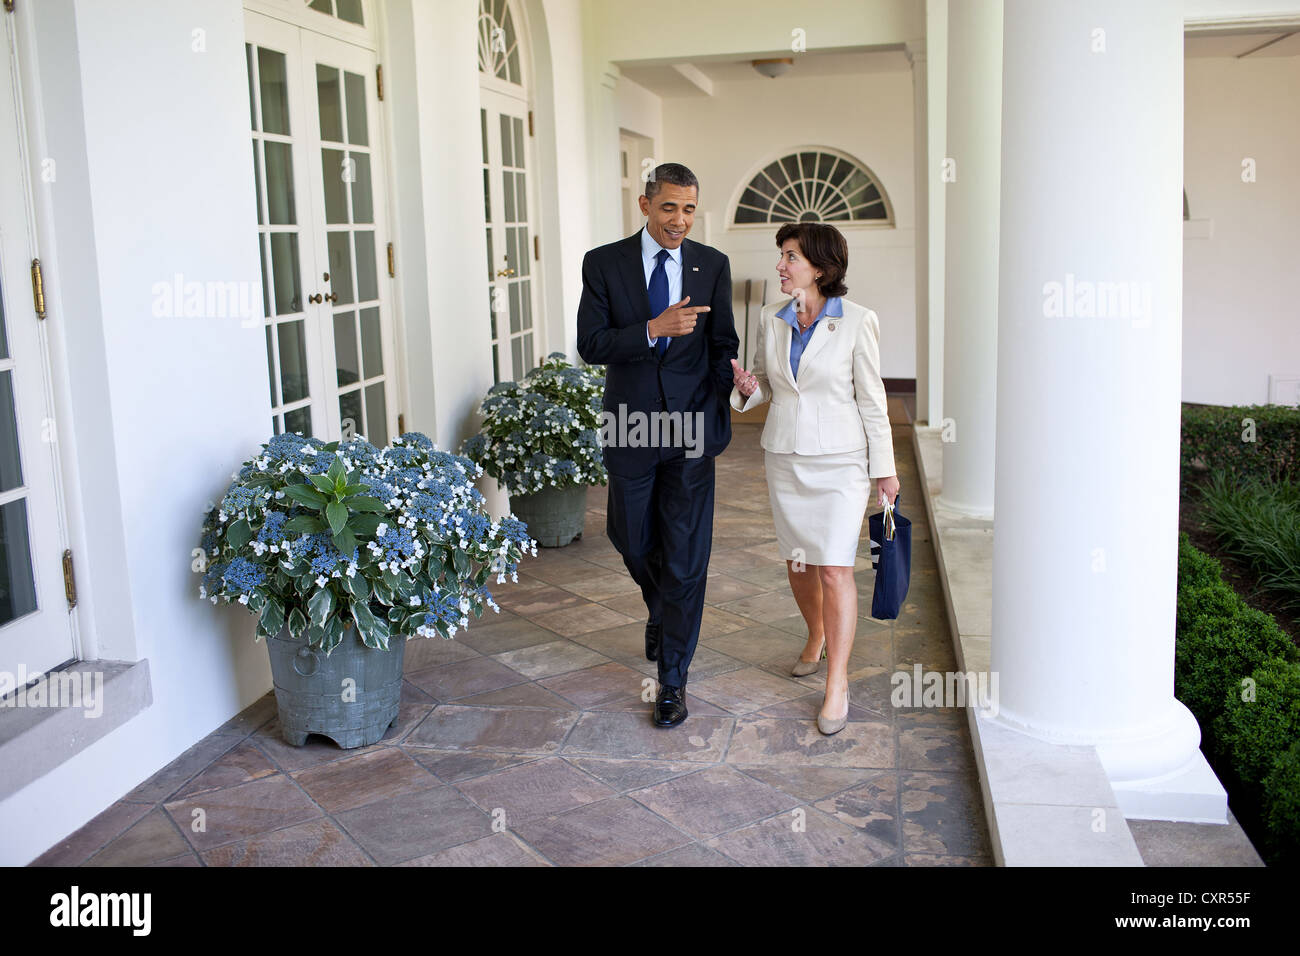 US-Präsident Barack Obama geht entlang der Kolonnade des weißen Hauses 2. Juni 2011 neu gewählte Vertreter Kathy Hochul. Stockfoto